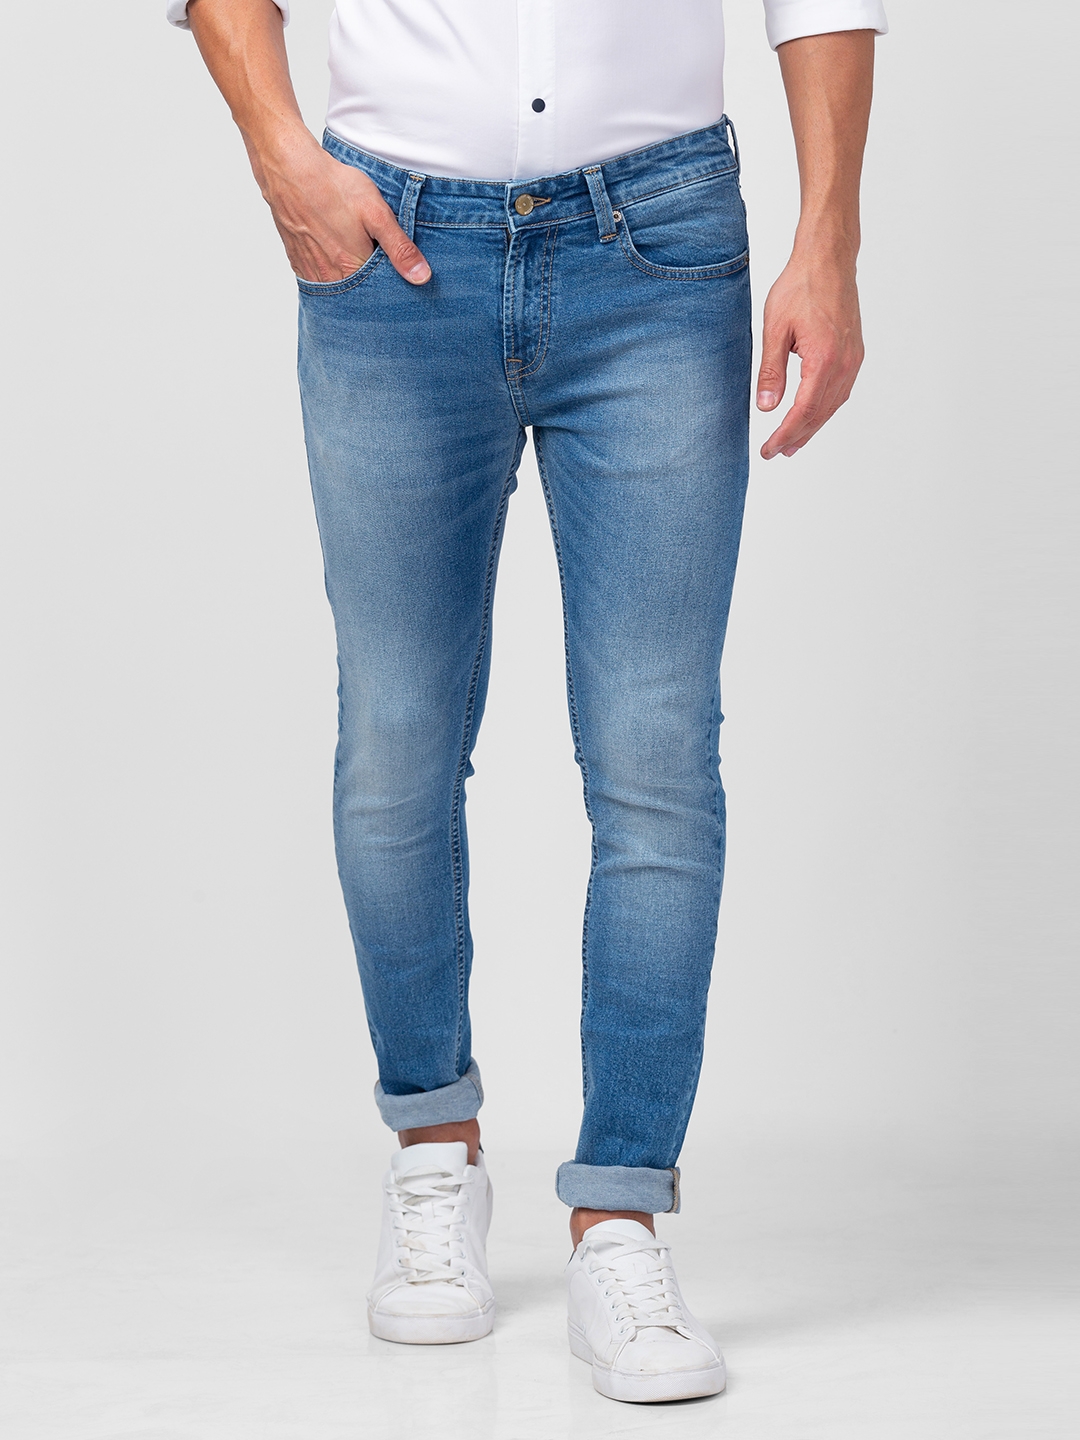 Men's Blue Cotton Jeans